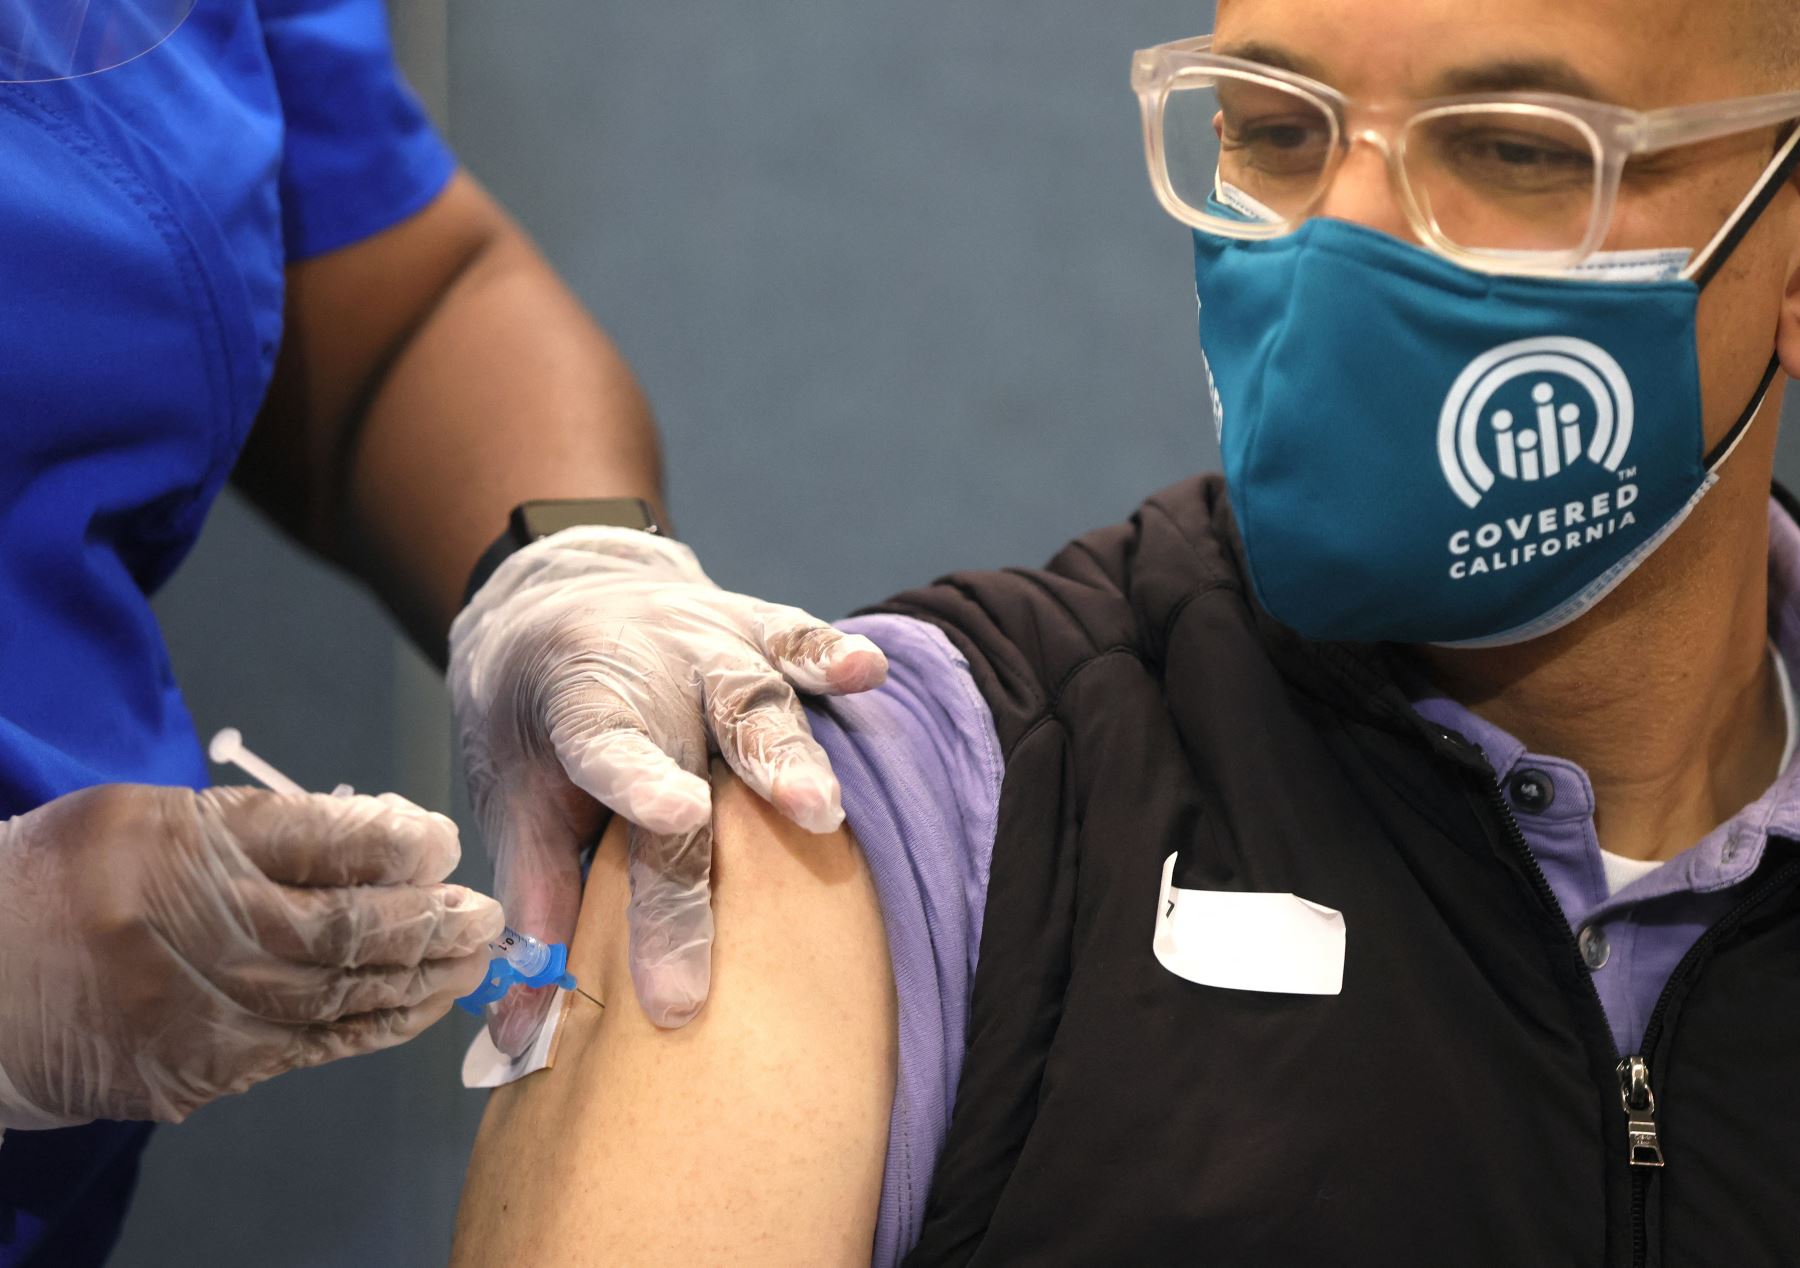 En los resultados sugieren que una sola dosis de la vacuna provoca una respuesta inmunitaria muy rápida en los individuos que han dado positivo. Foto: AFP